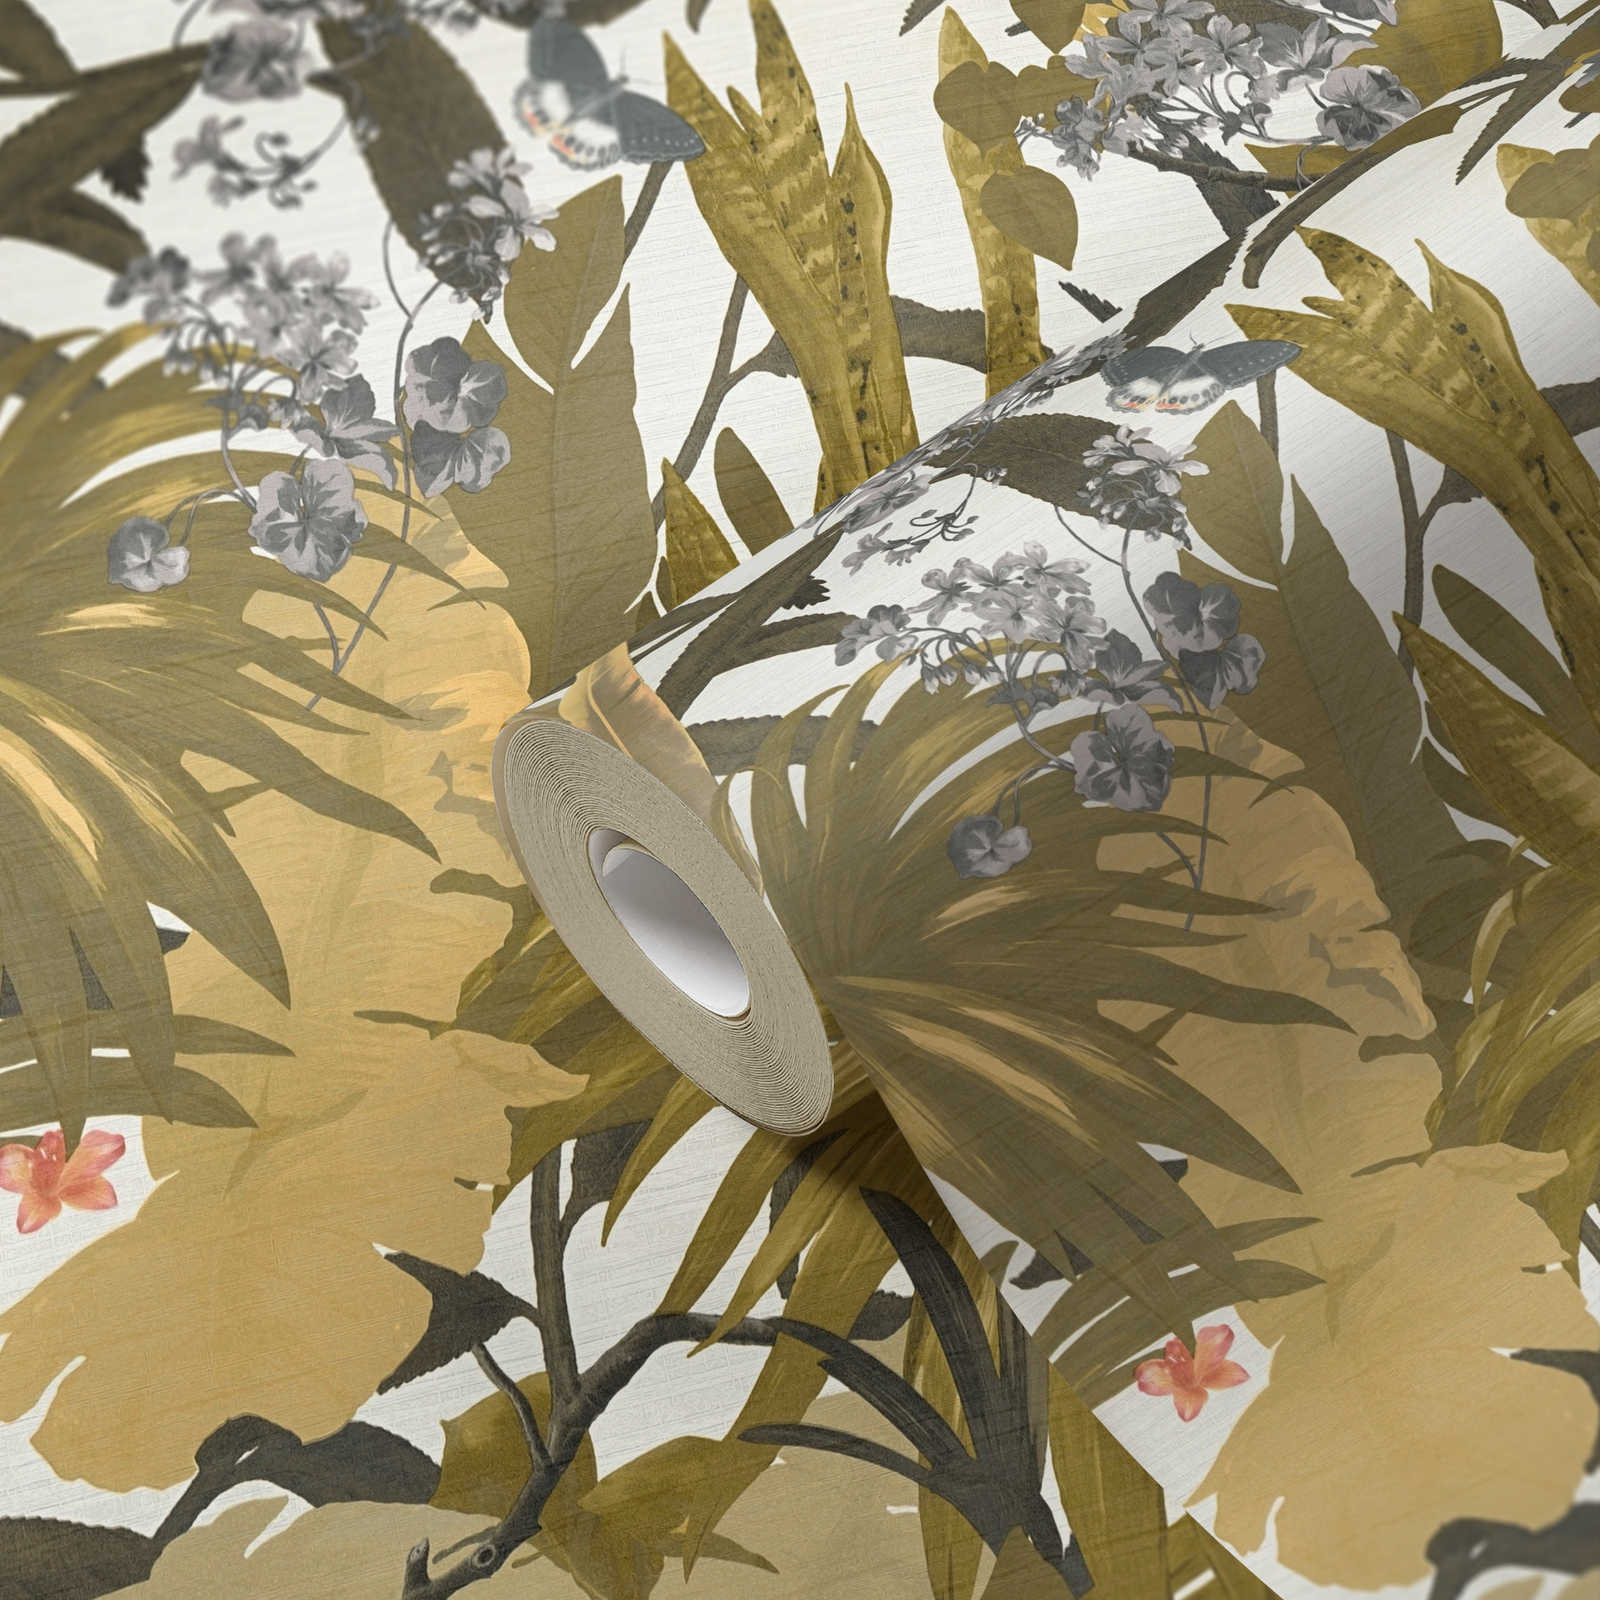             Tapete Dschungel Design mit Blättermuster – Gelb, Grau
        